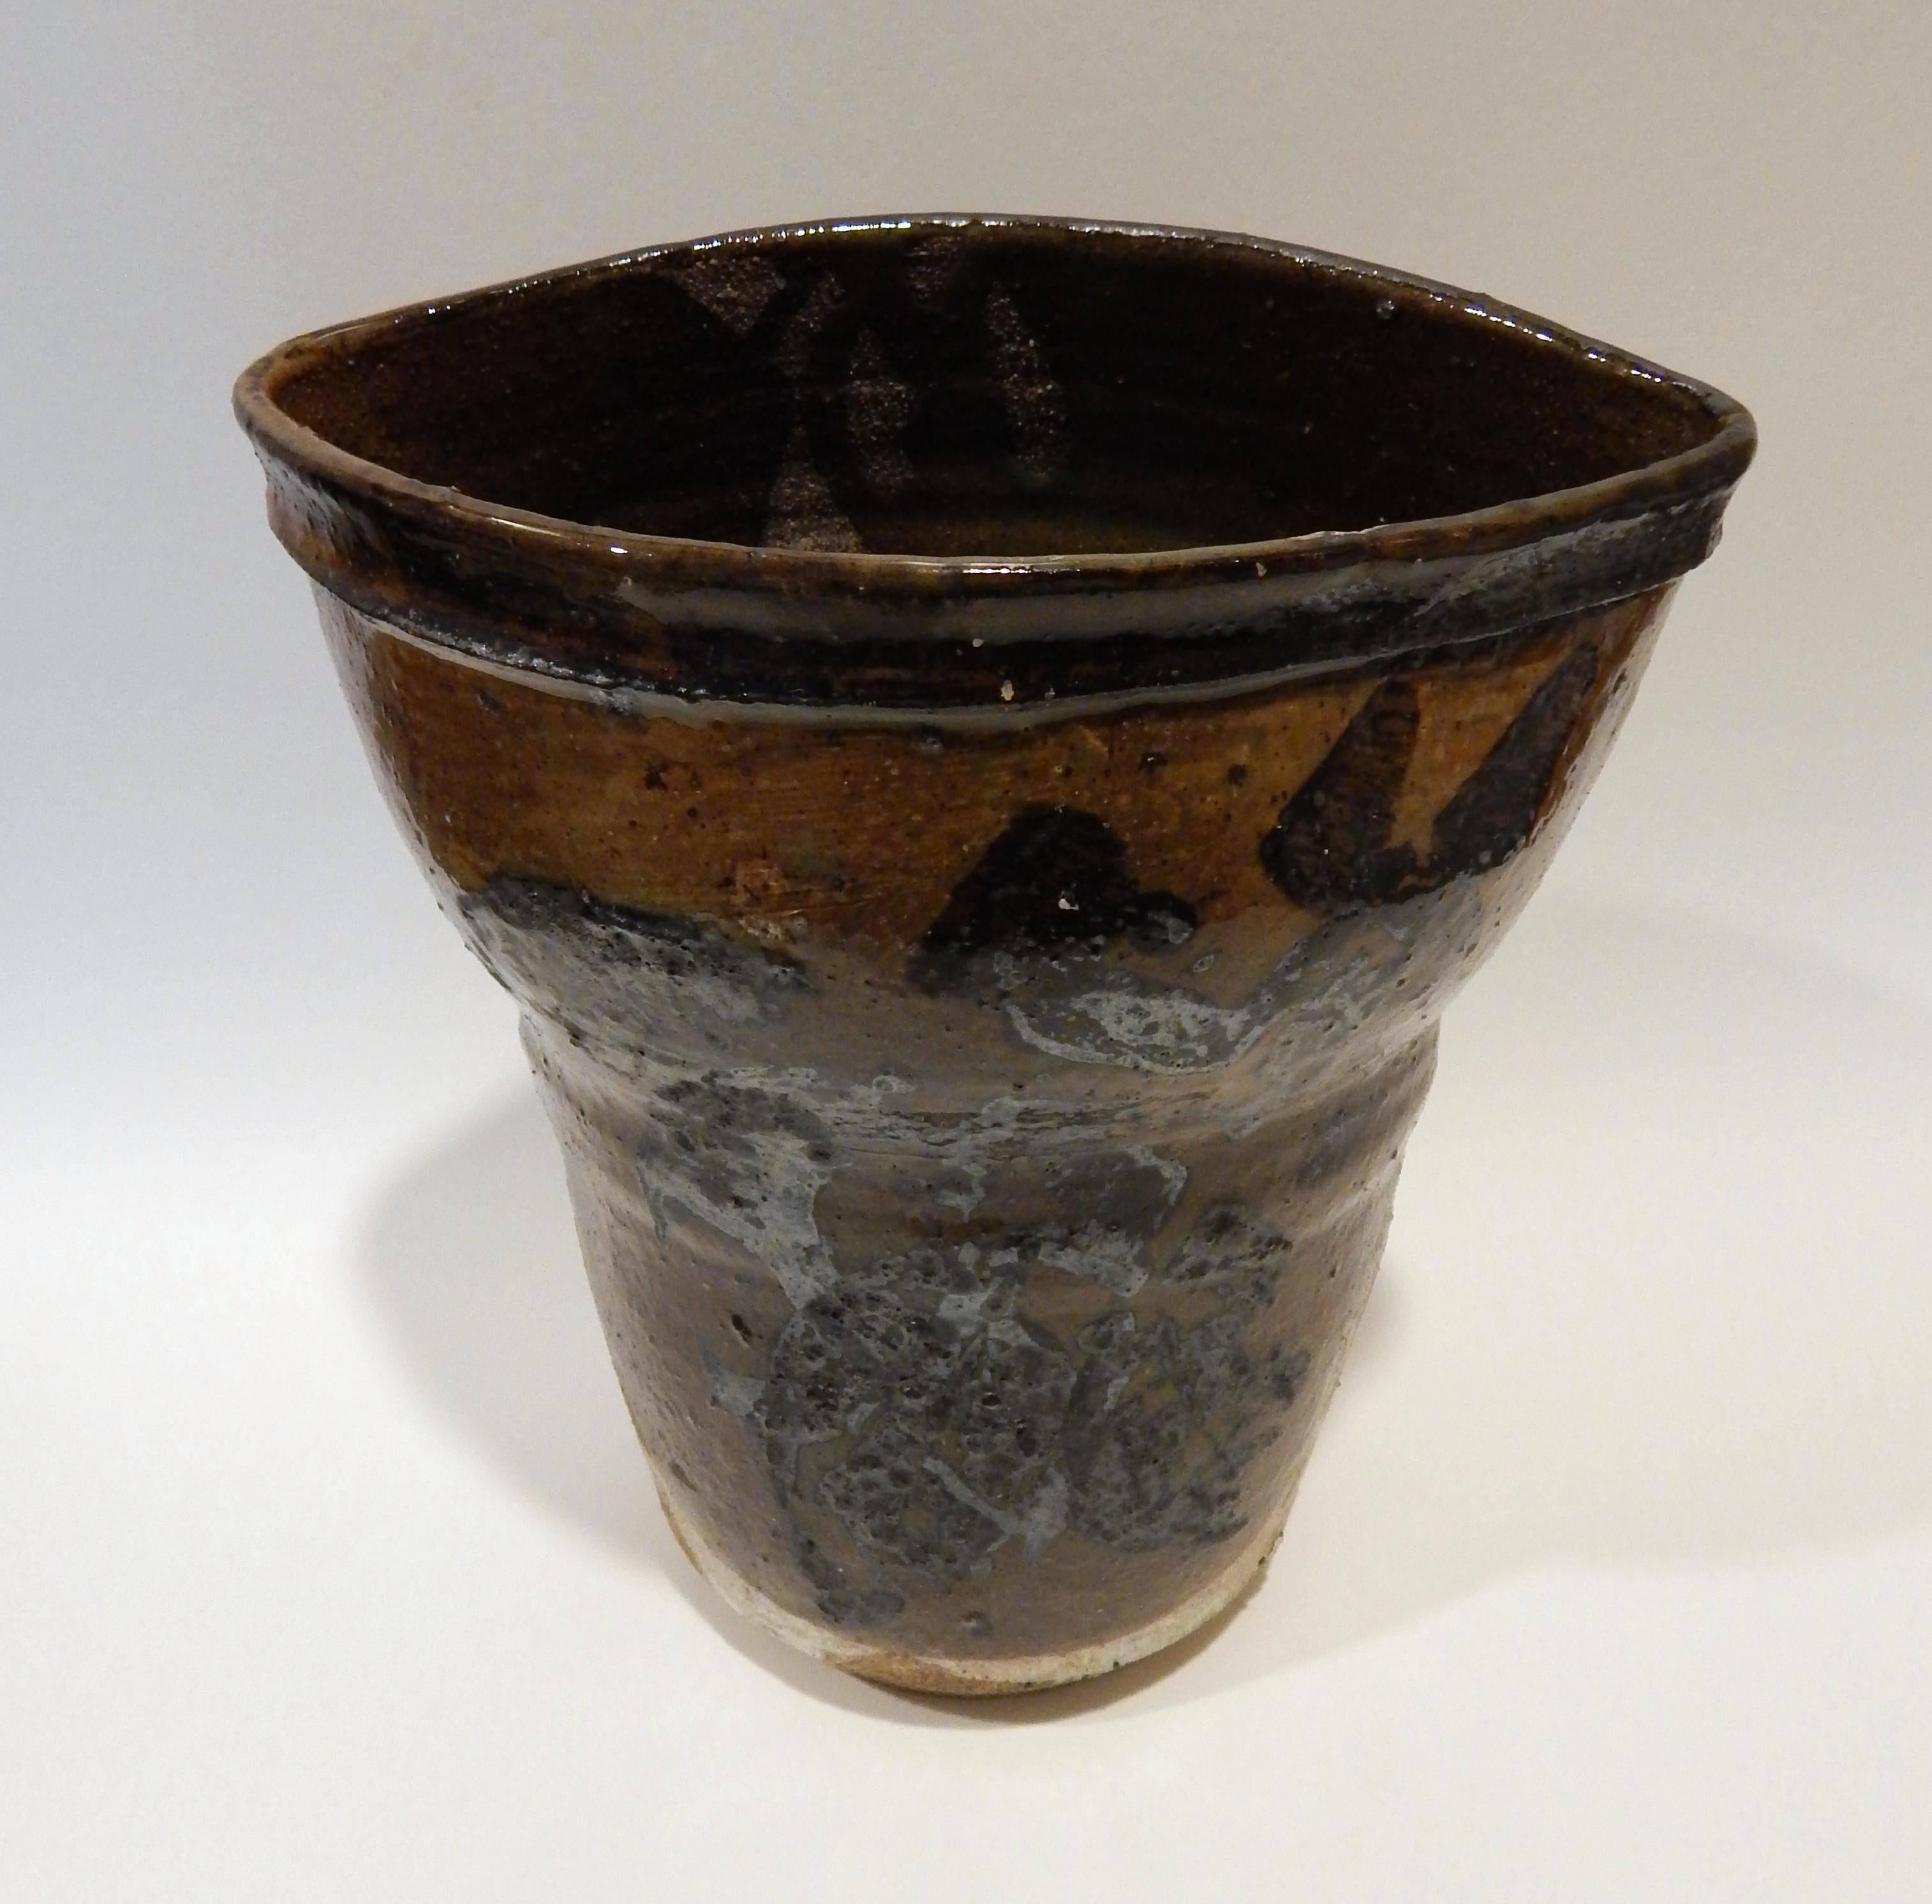 Paul Soldner (1921-2010) vase en poterie expressionniste abstraite.
Glace en noir et brun, partiellement non glacée.
Excellent design, état neuf.
Signé Soldner en bas.
Mesures : 10